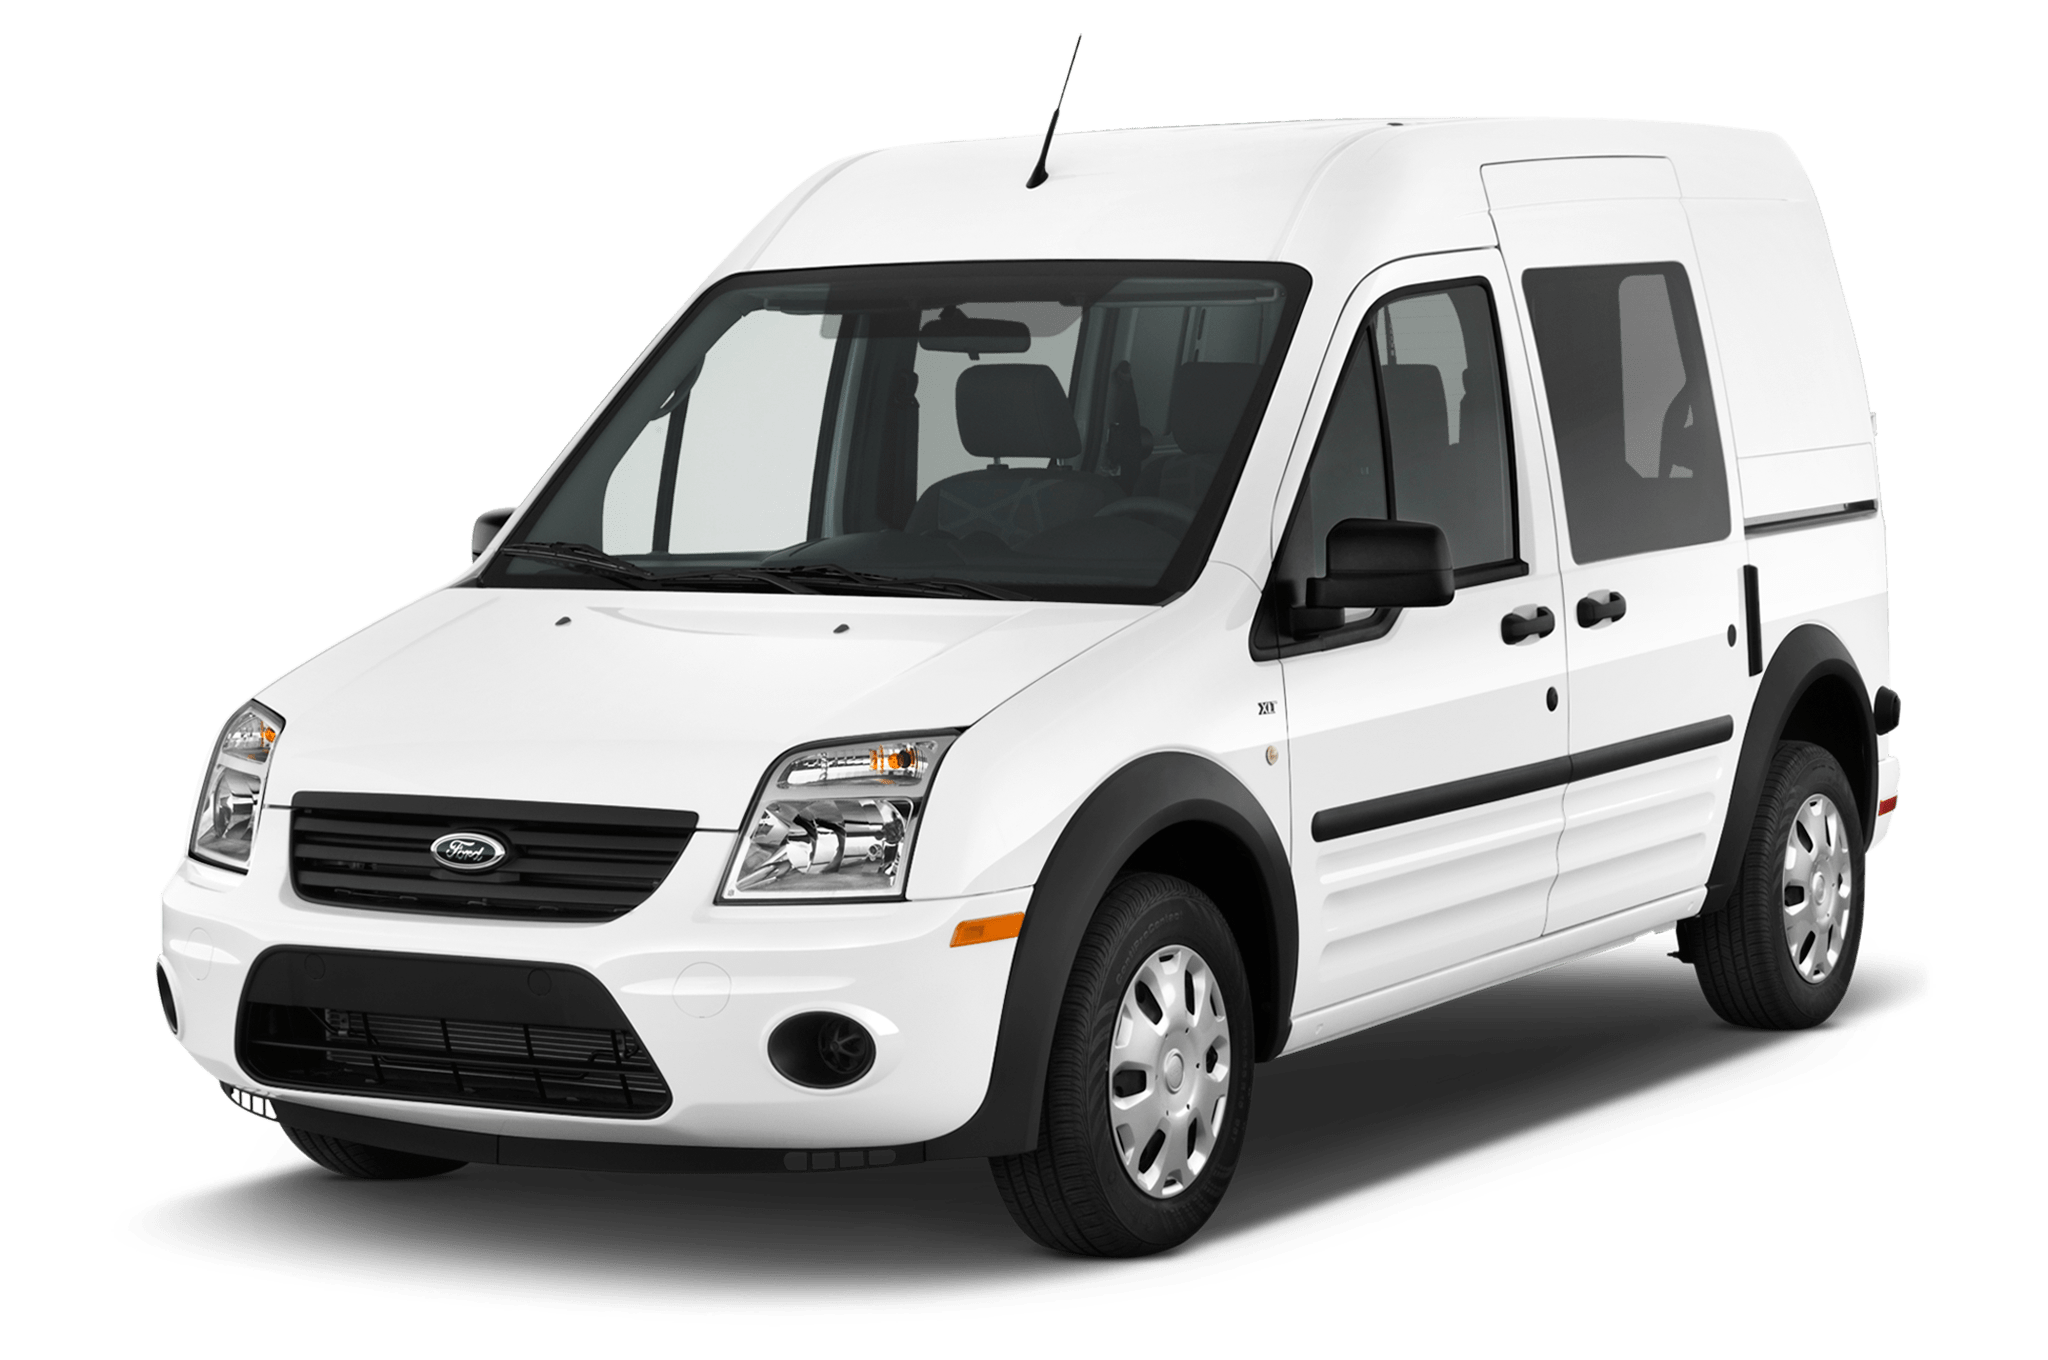 Ford Tourneo для перевозки лежачих больных и инвалидов